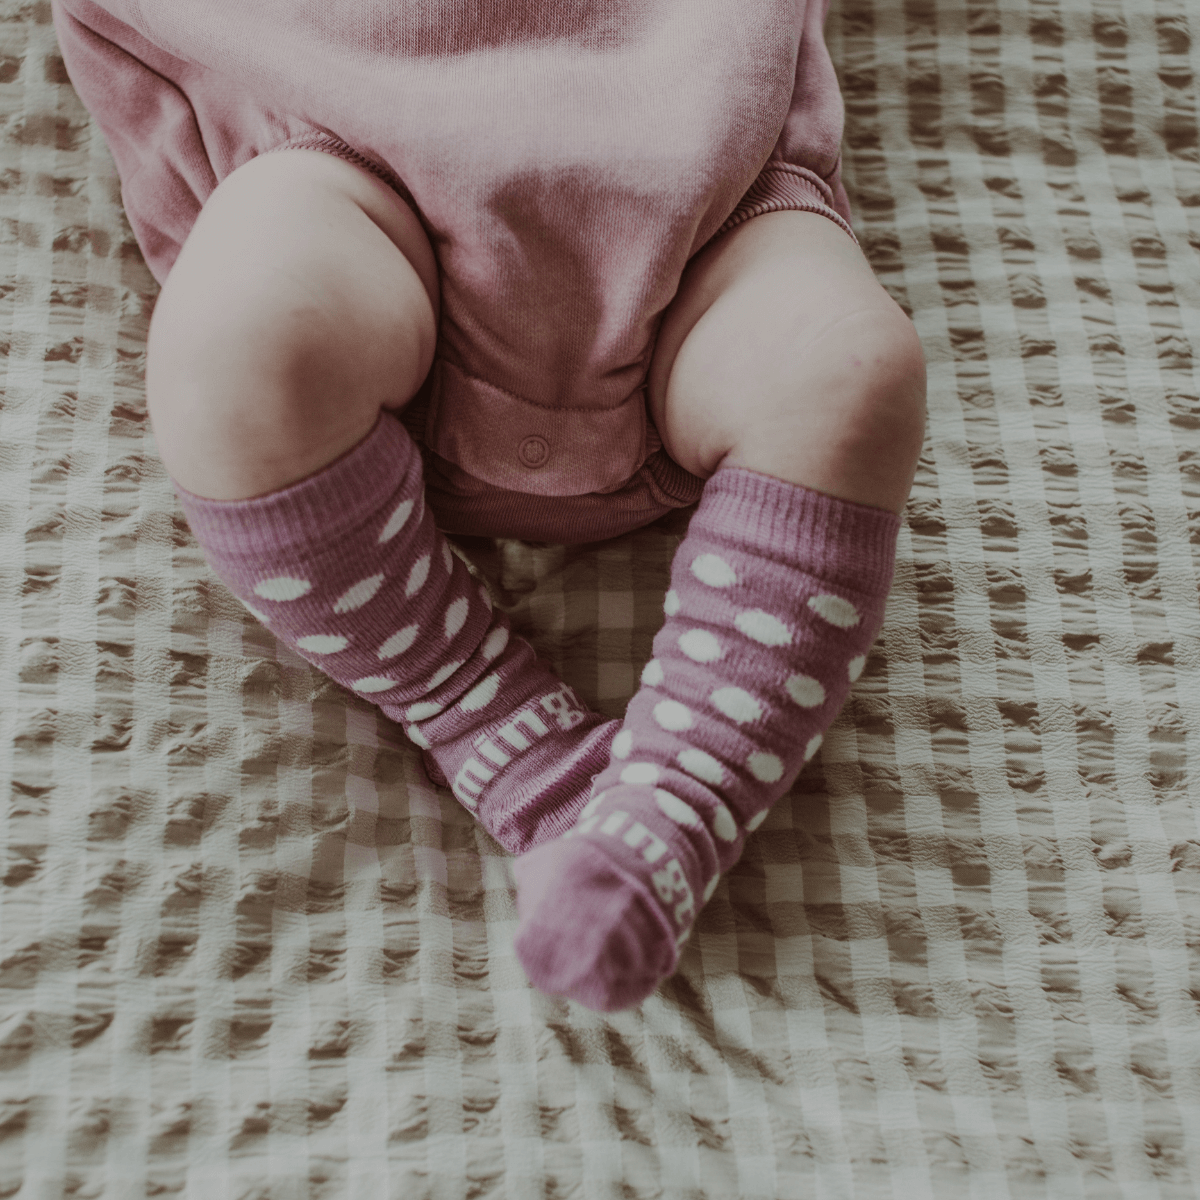 Merino wool baby socks knee-high purple nz aus